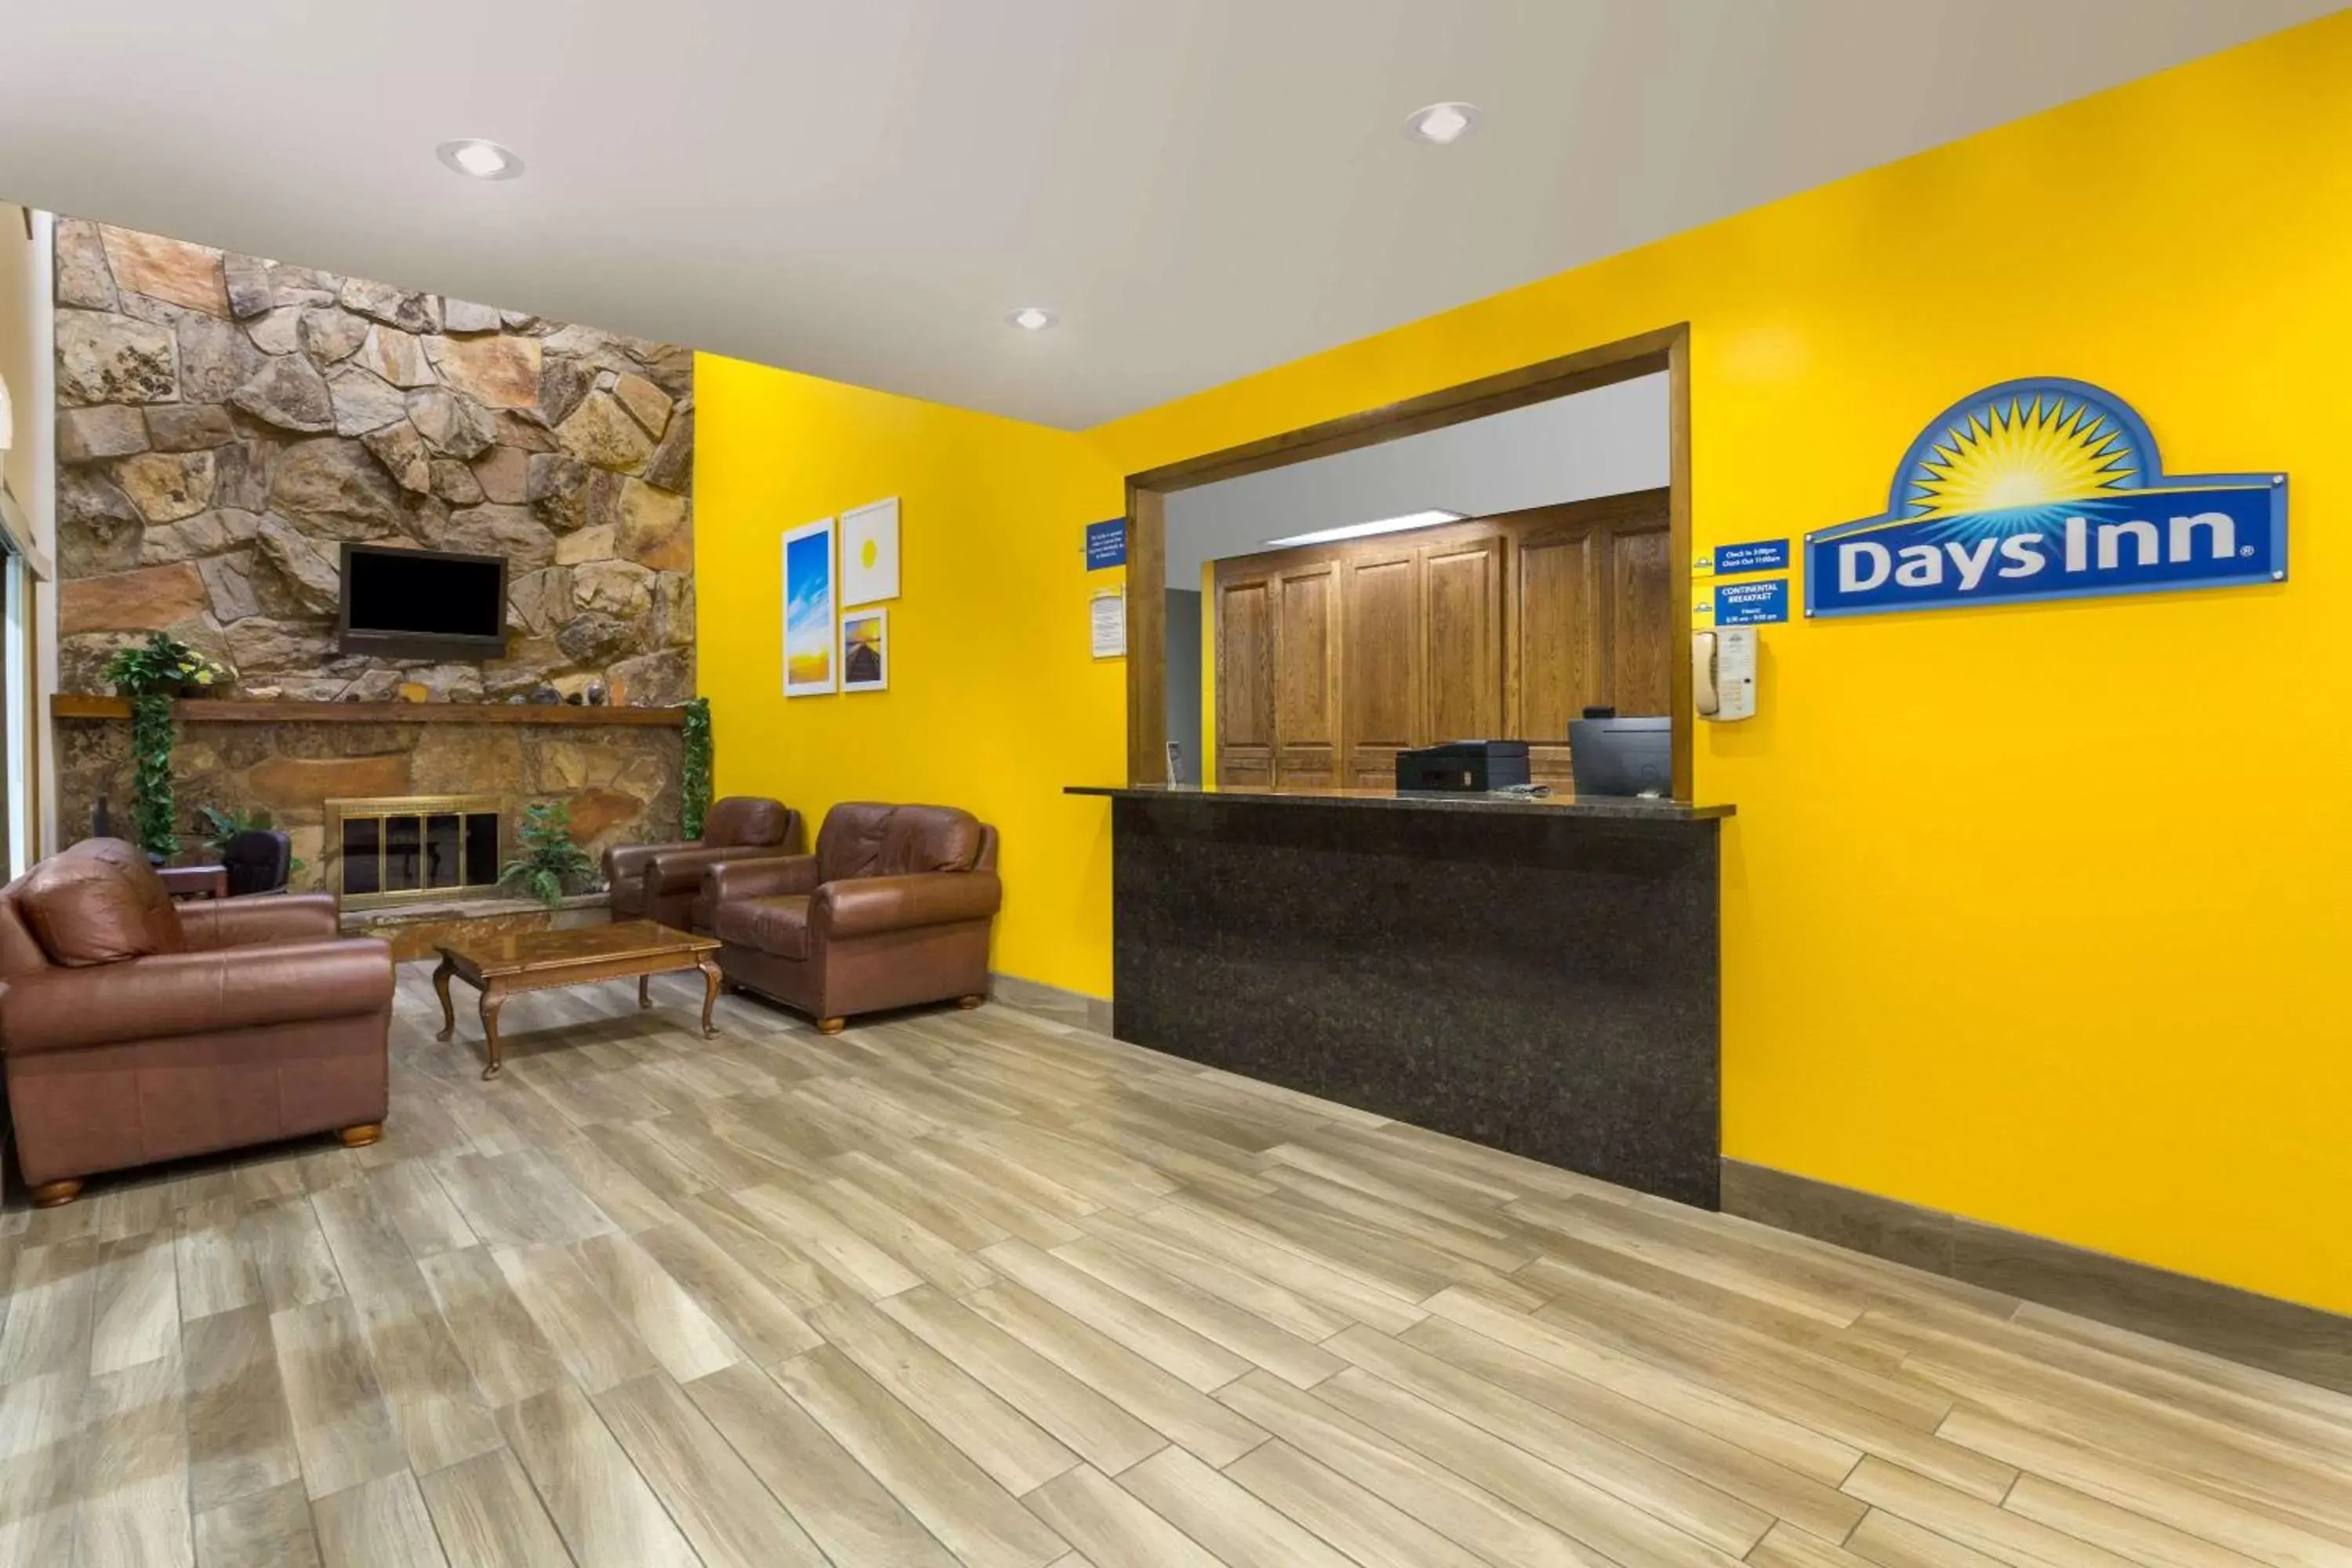 Lobby or reception, Lobby/Reception in Days Inn by Wyndham Delta